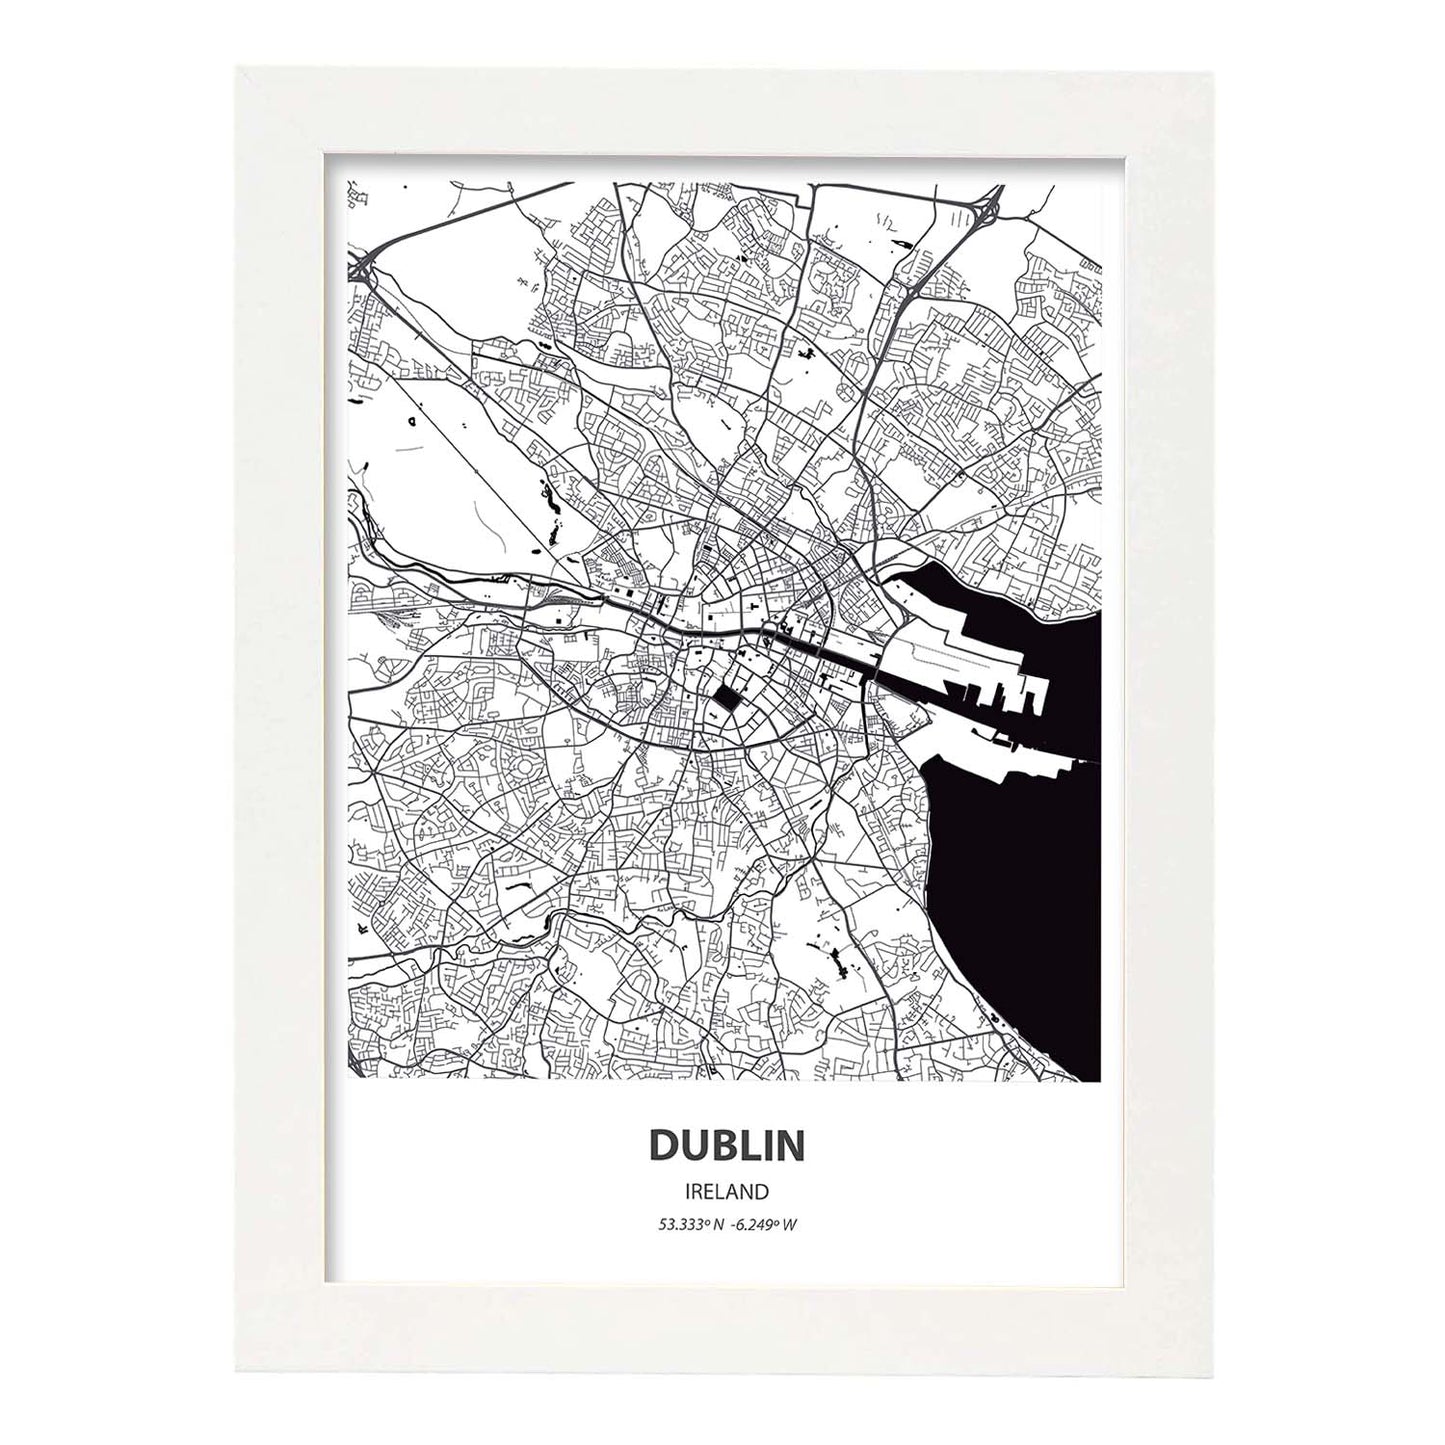 Poster con mapa de Dublin - Irlanda. Láminas de ciudades de Europa con mares y ríos en color negro.-Artwork-Nacnic-A3-Marco Blanco-Nacnic Estudio SL